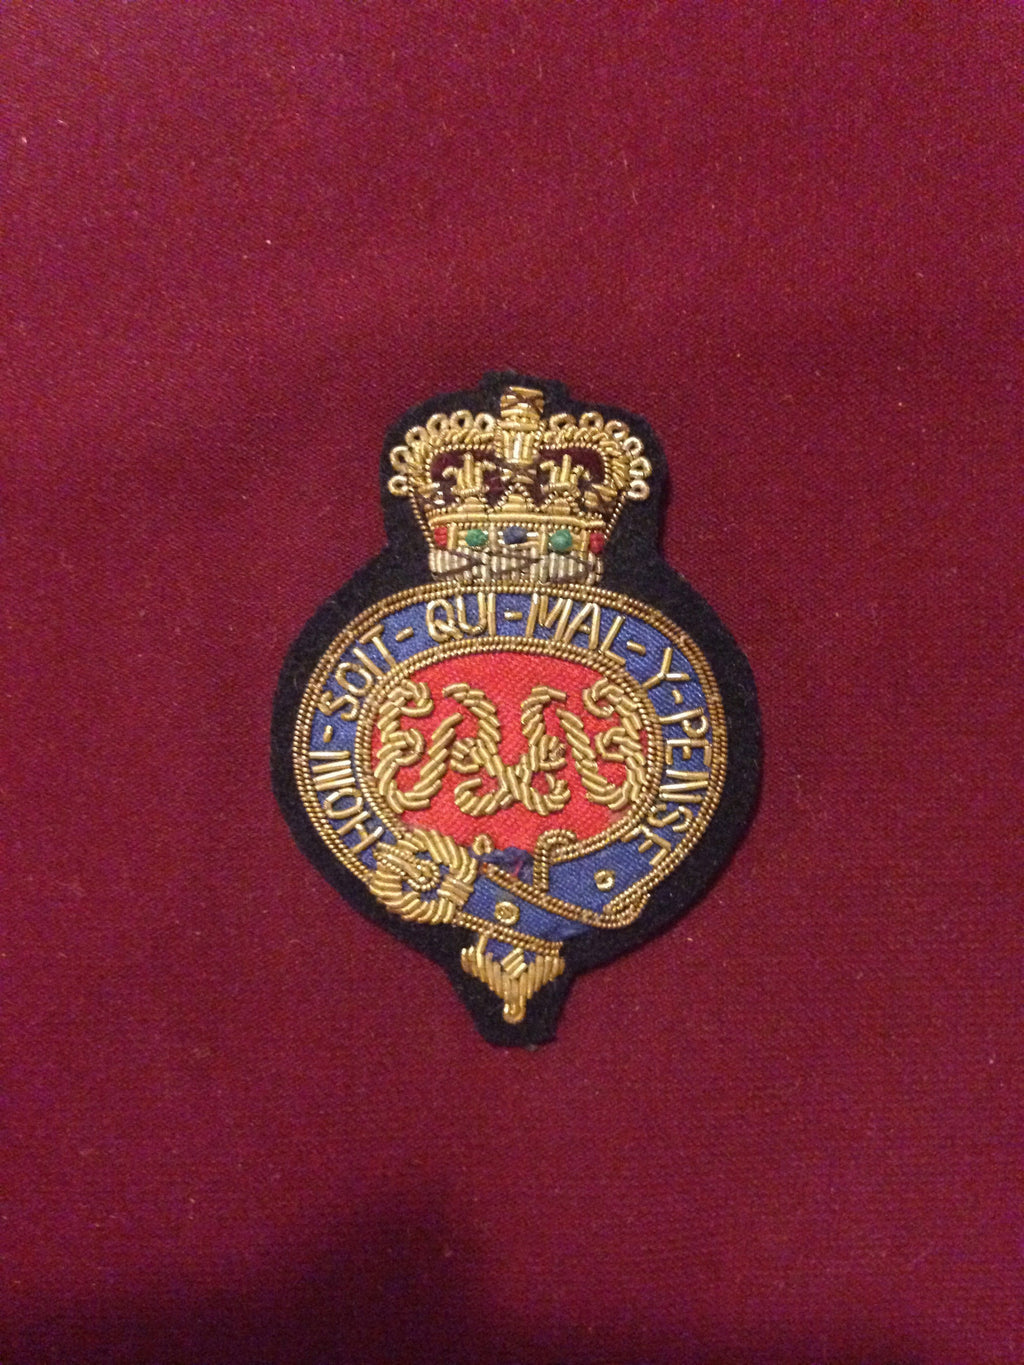 Grenadier Guards Cap badge